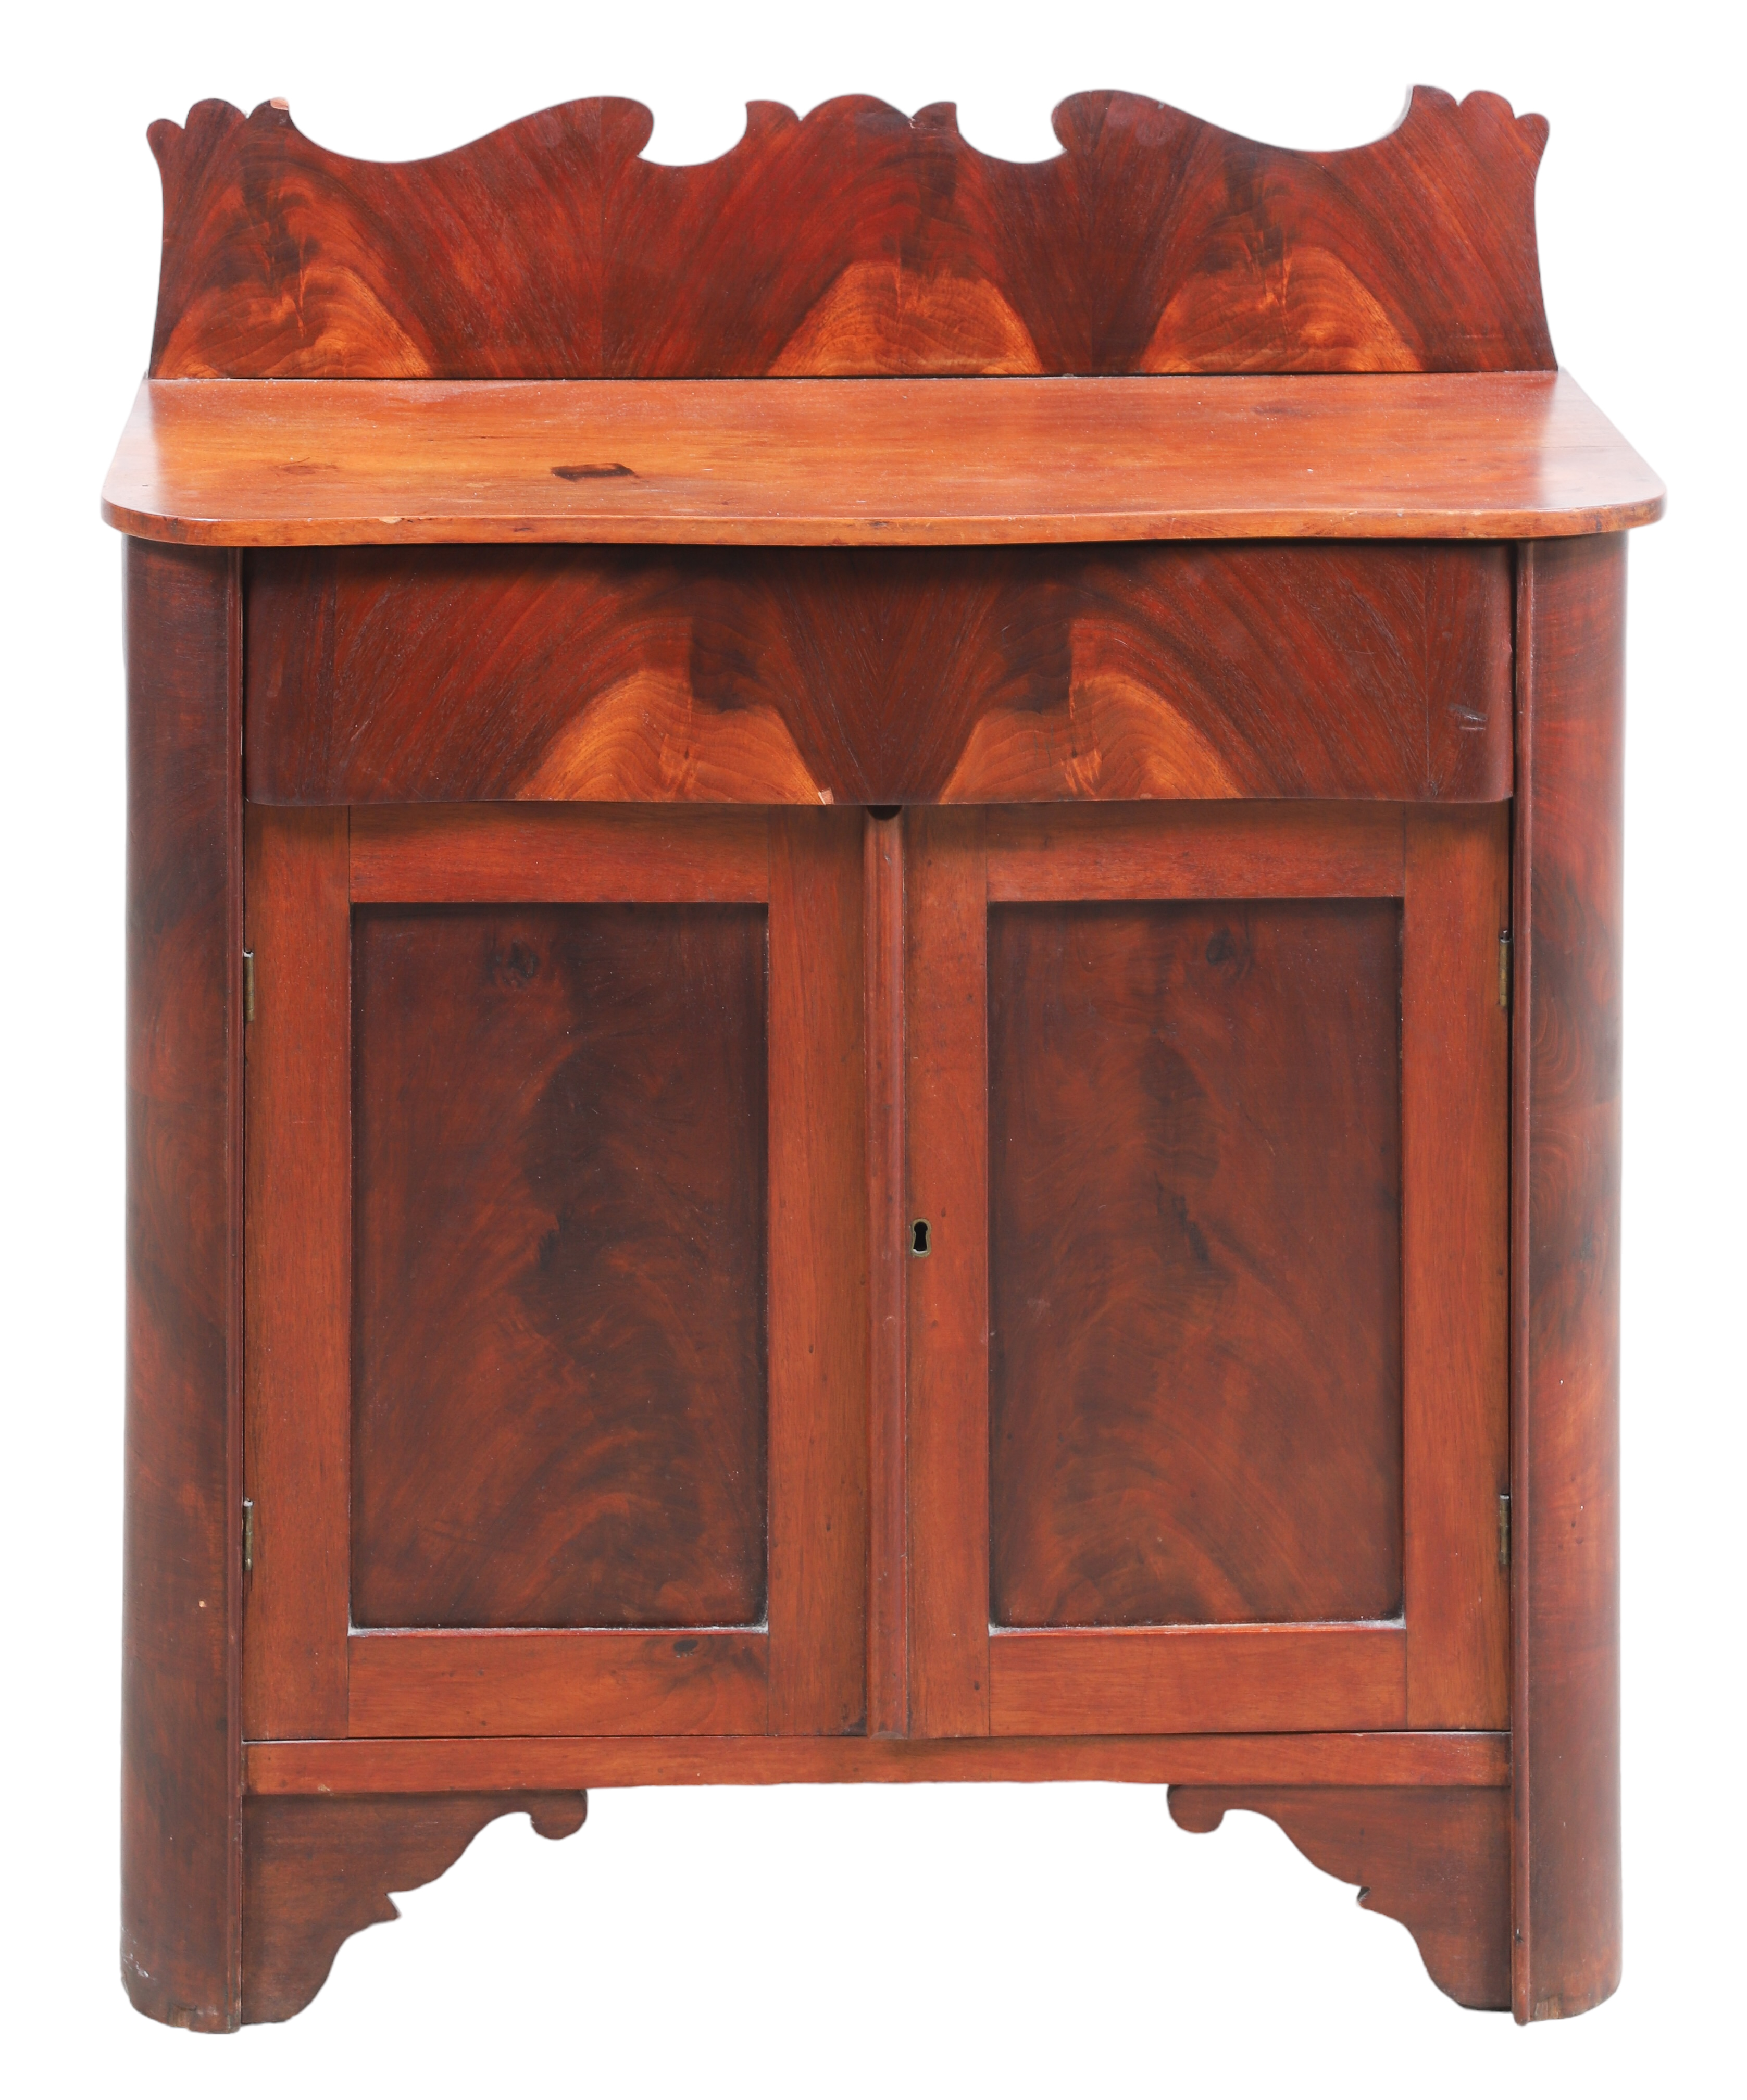 Victorian style mahogany washstand,